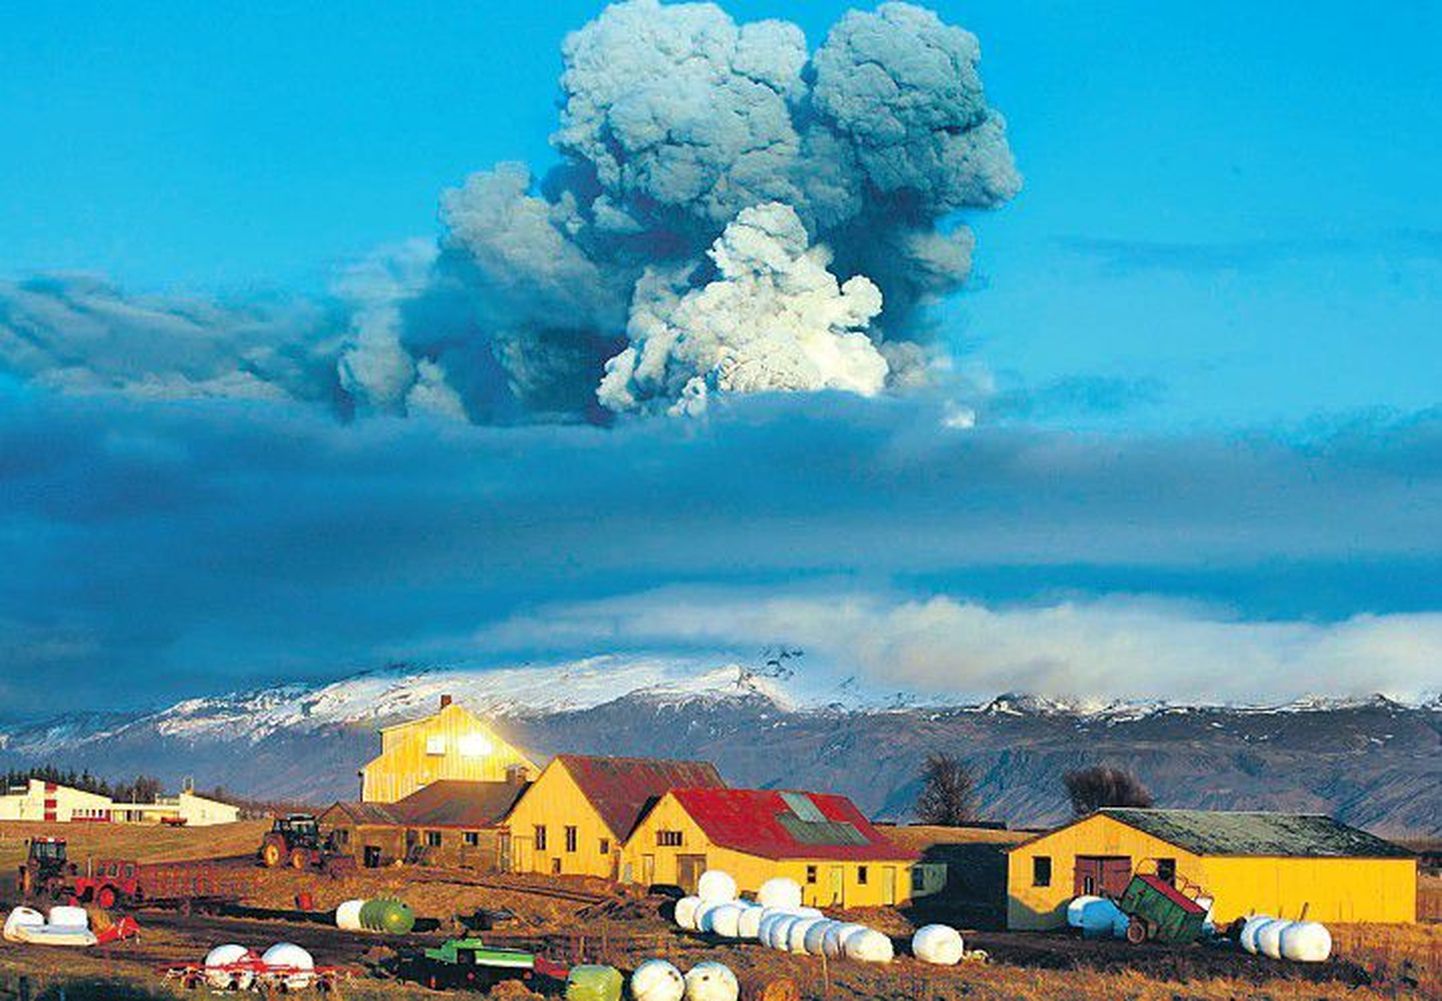 Исландцы уже привыкли к грозным сюрпризам природы, и их не пугают пепел, огонь и пыль.